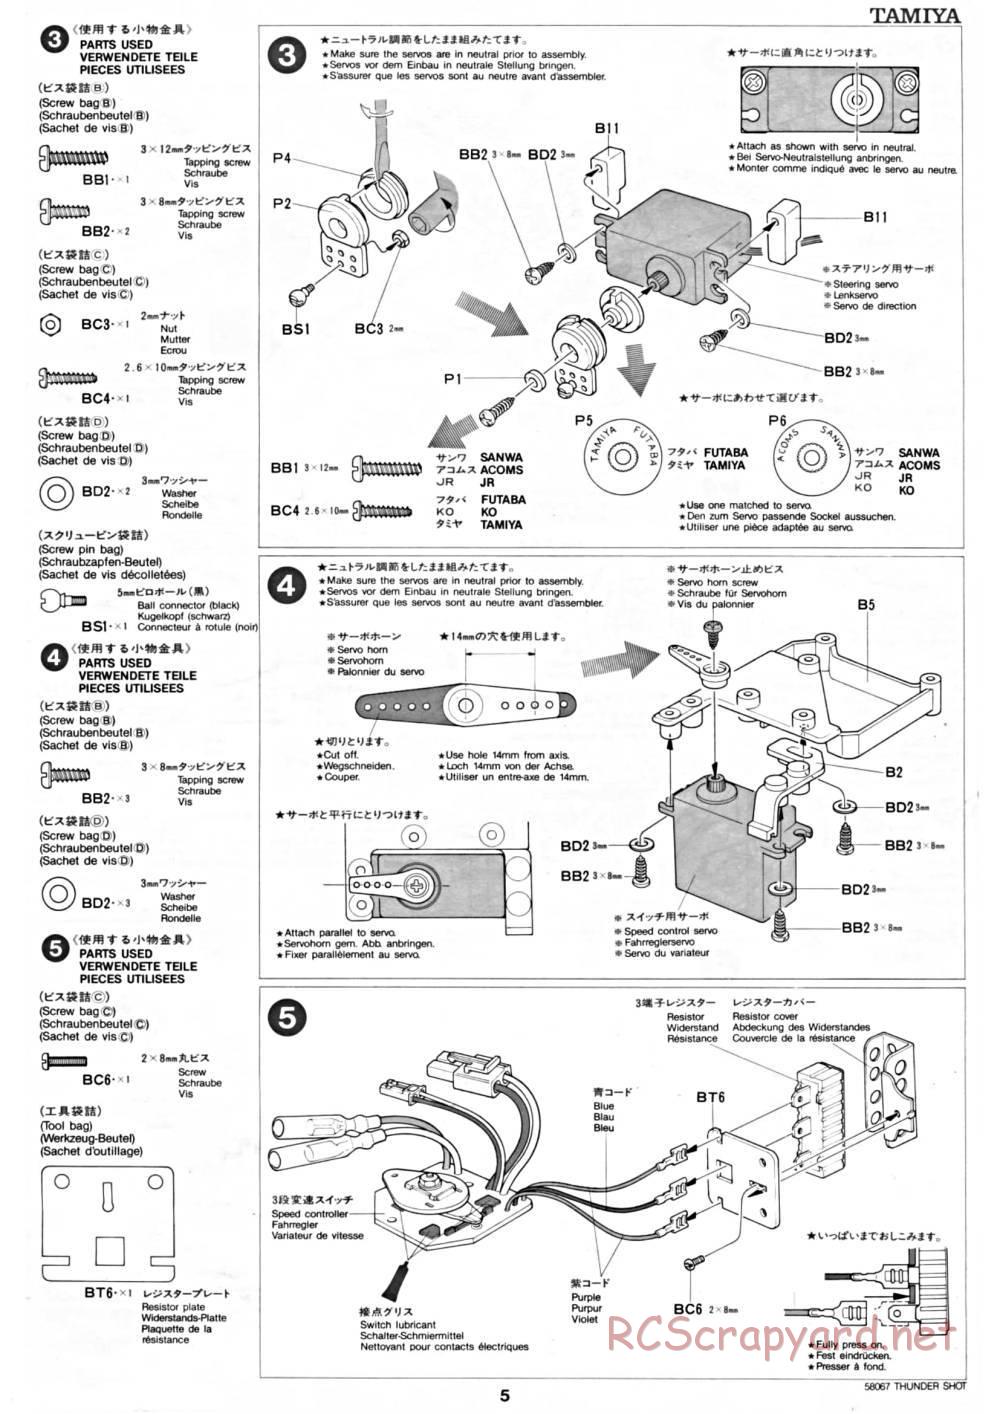 Tamiya - Thunder Shot - 58067 - Manual - Page 5